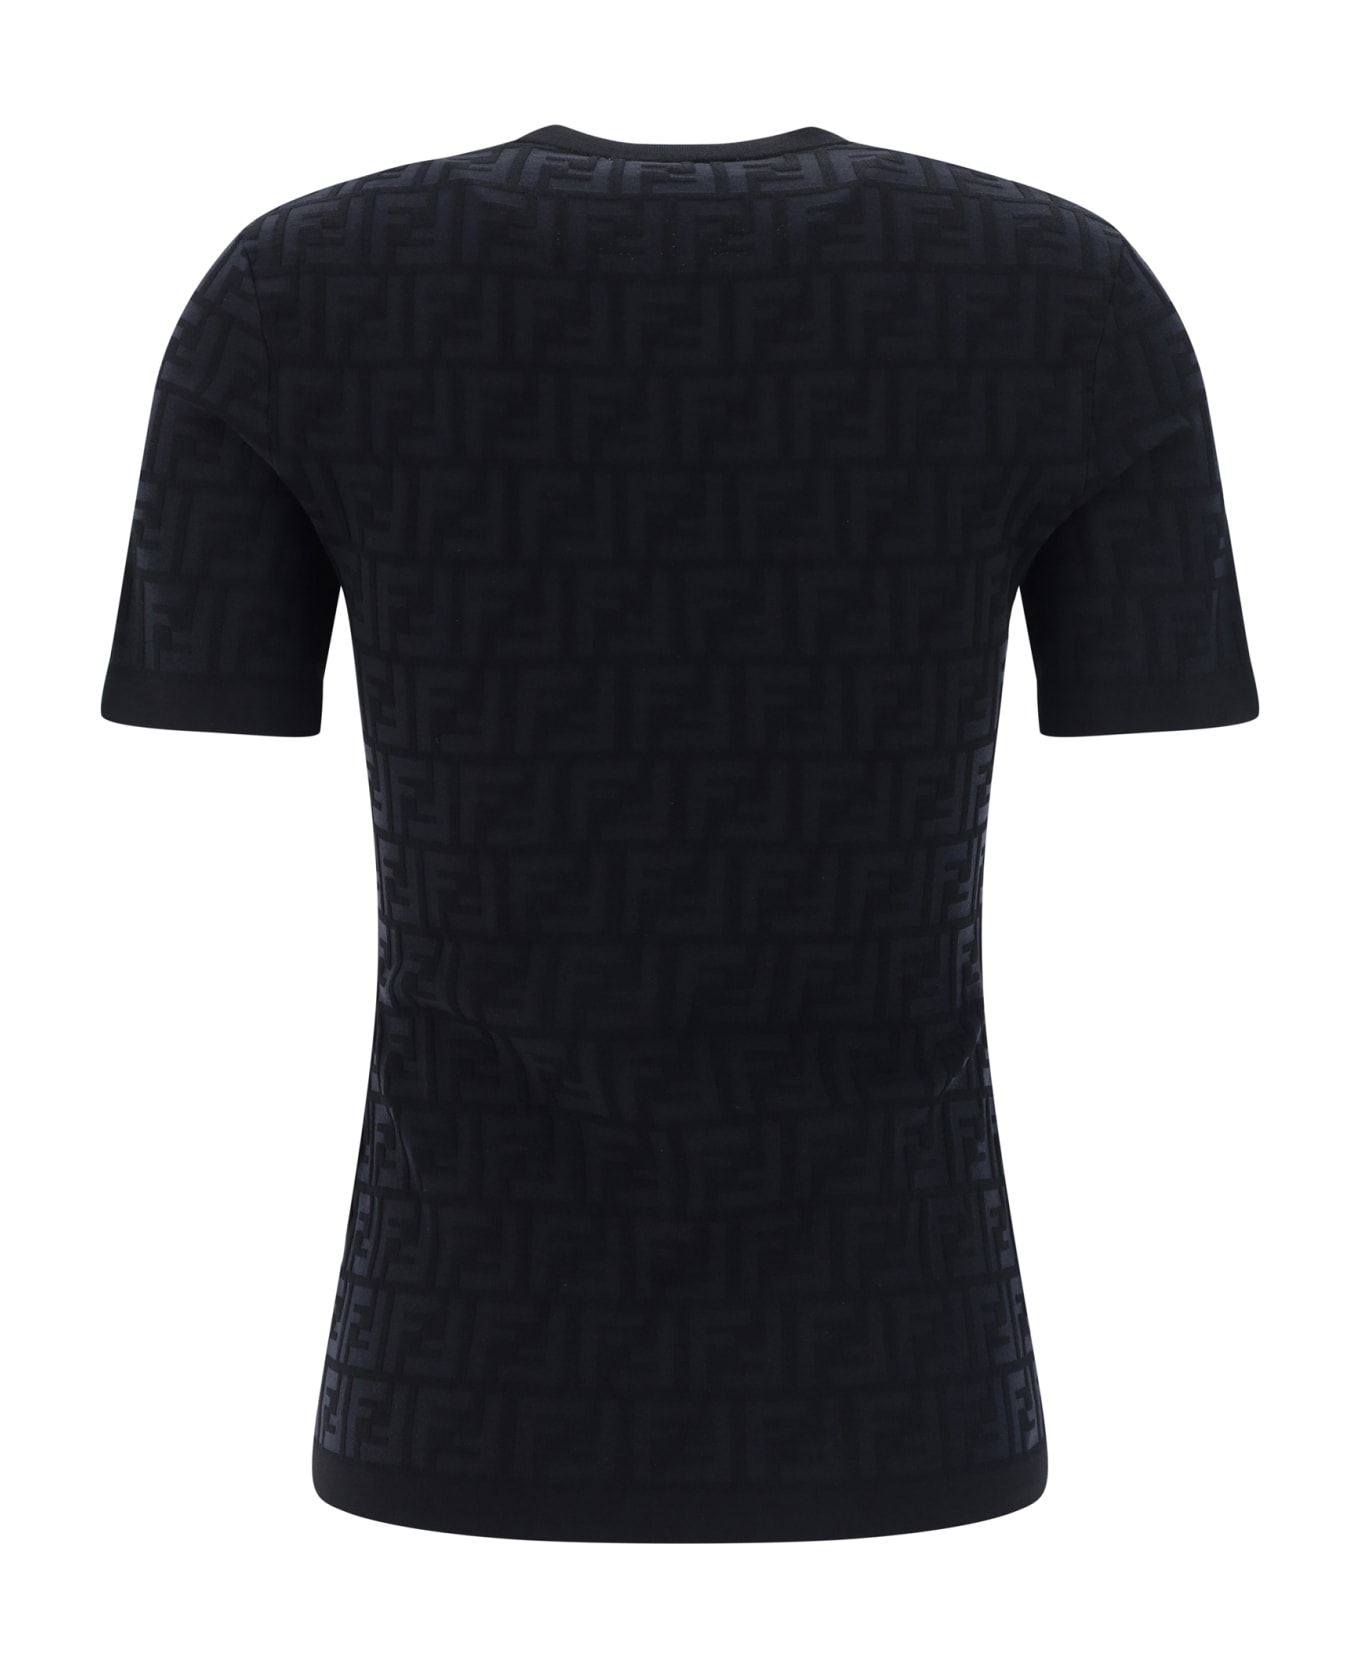 Fendi T-shirt - Gme Black Tシャツ